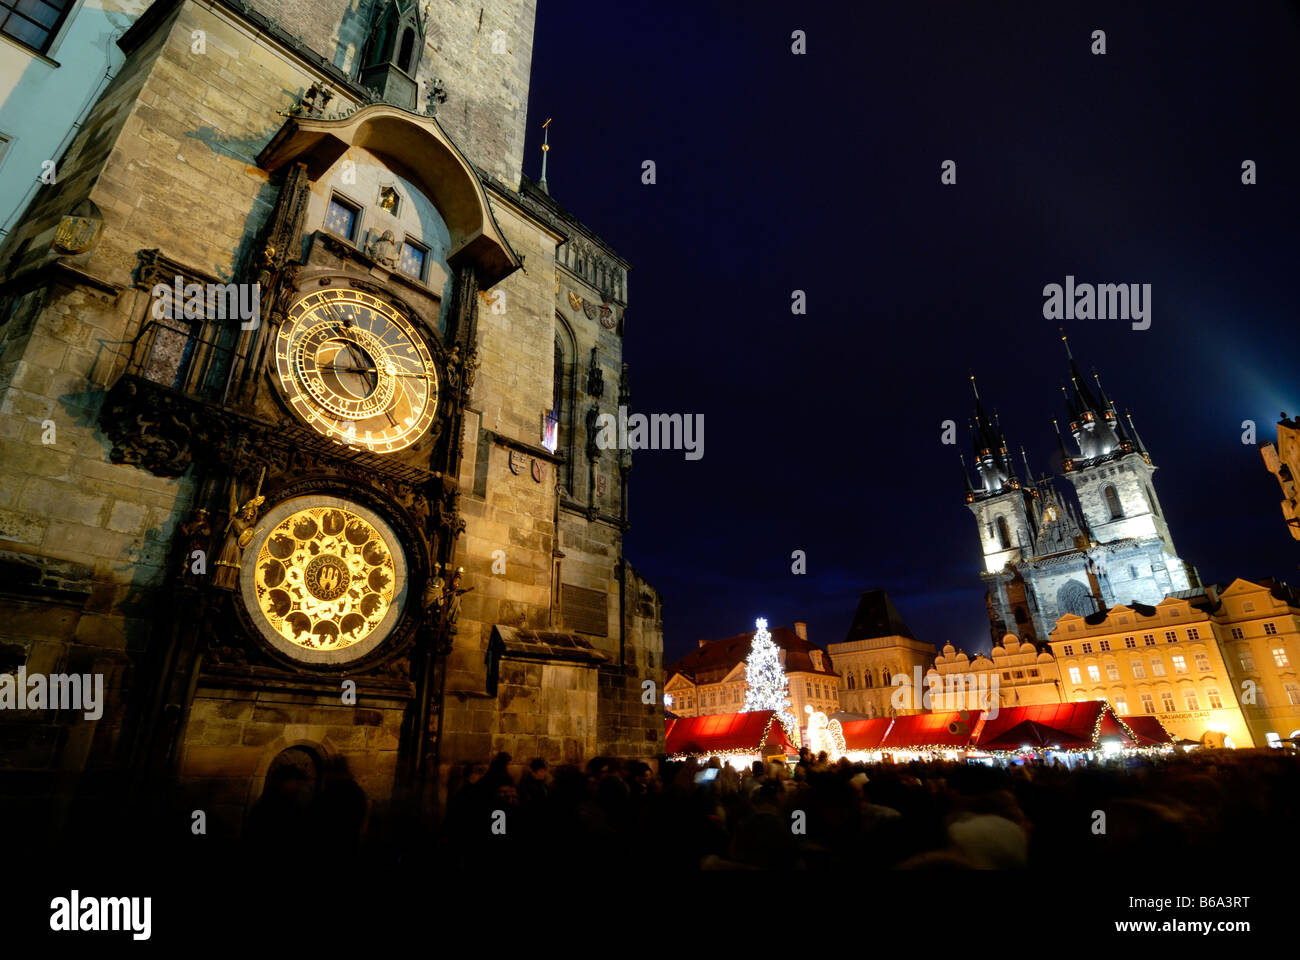 Astronomische Uhr Orloj Altstädter Rathaus nachts Old Town Square UNESCO Prag Tschechische Republik Weihnachtsmarkt Stockfoto